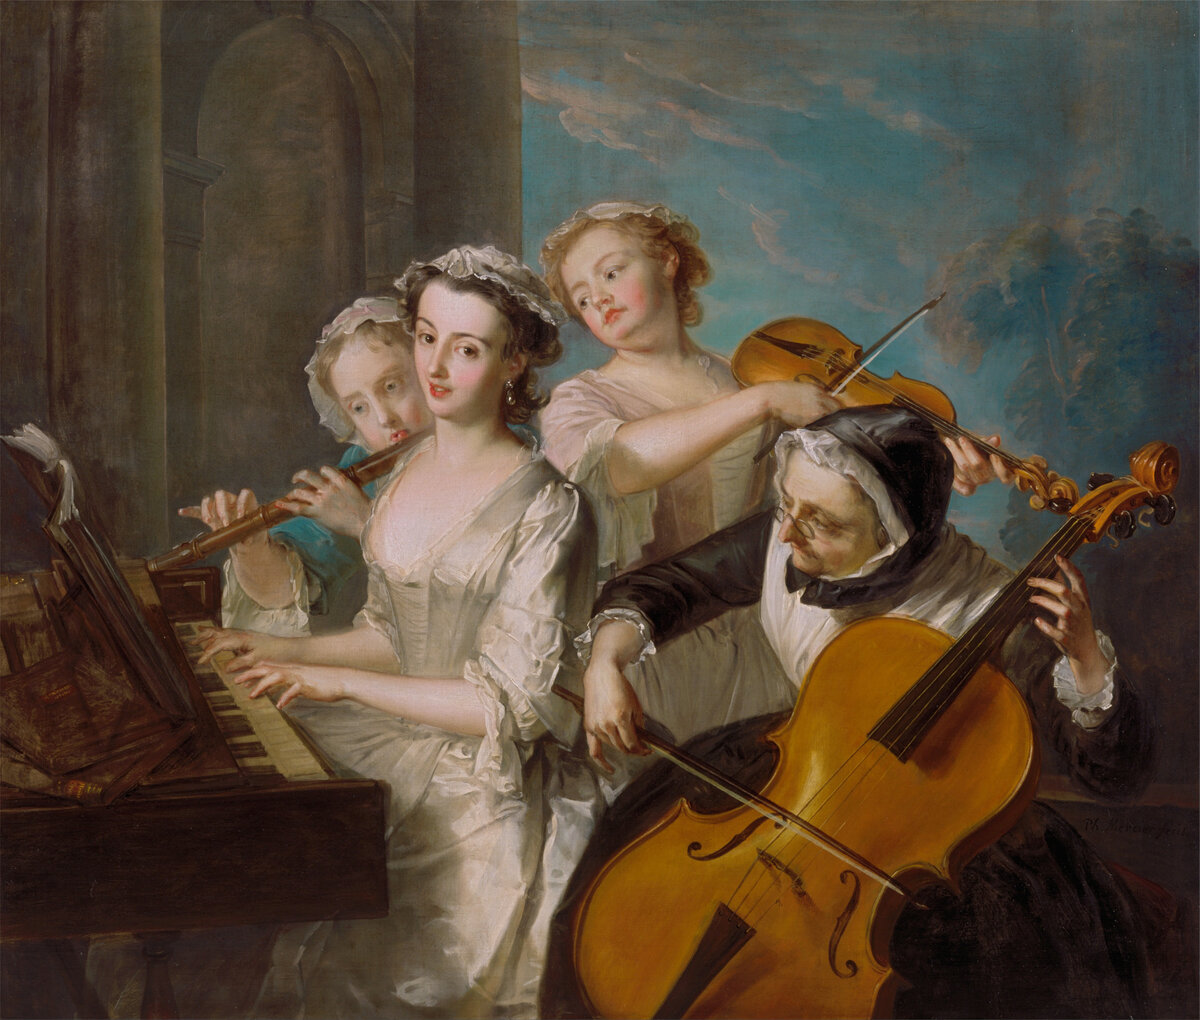  Жан Филипп Рамо. Танец из 4 картины оперы-балета "Галантные Индии" (1735) Рамо - это один из главных французских классиков.